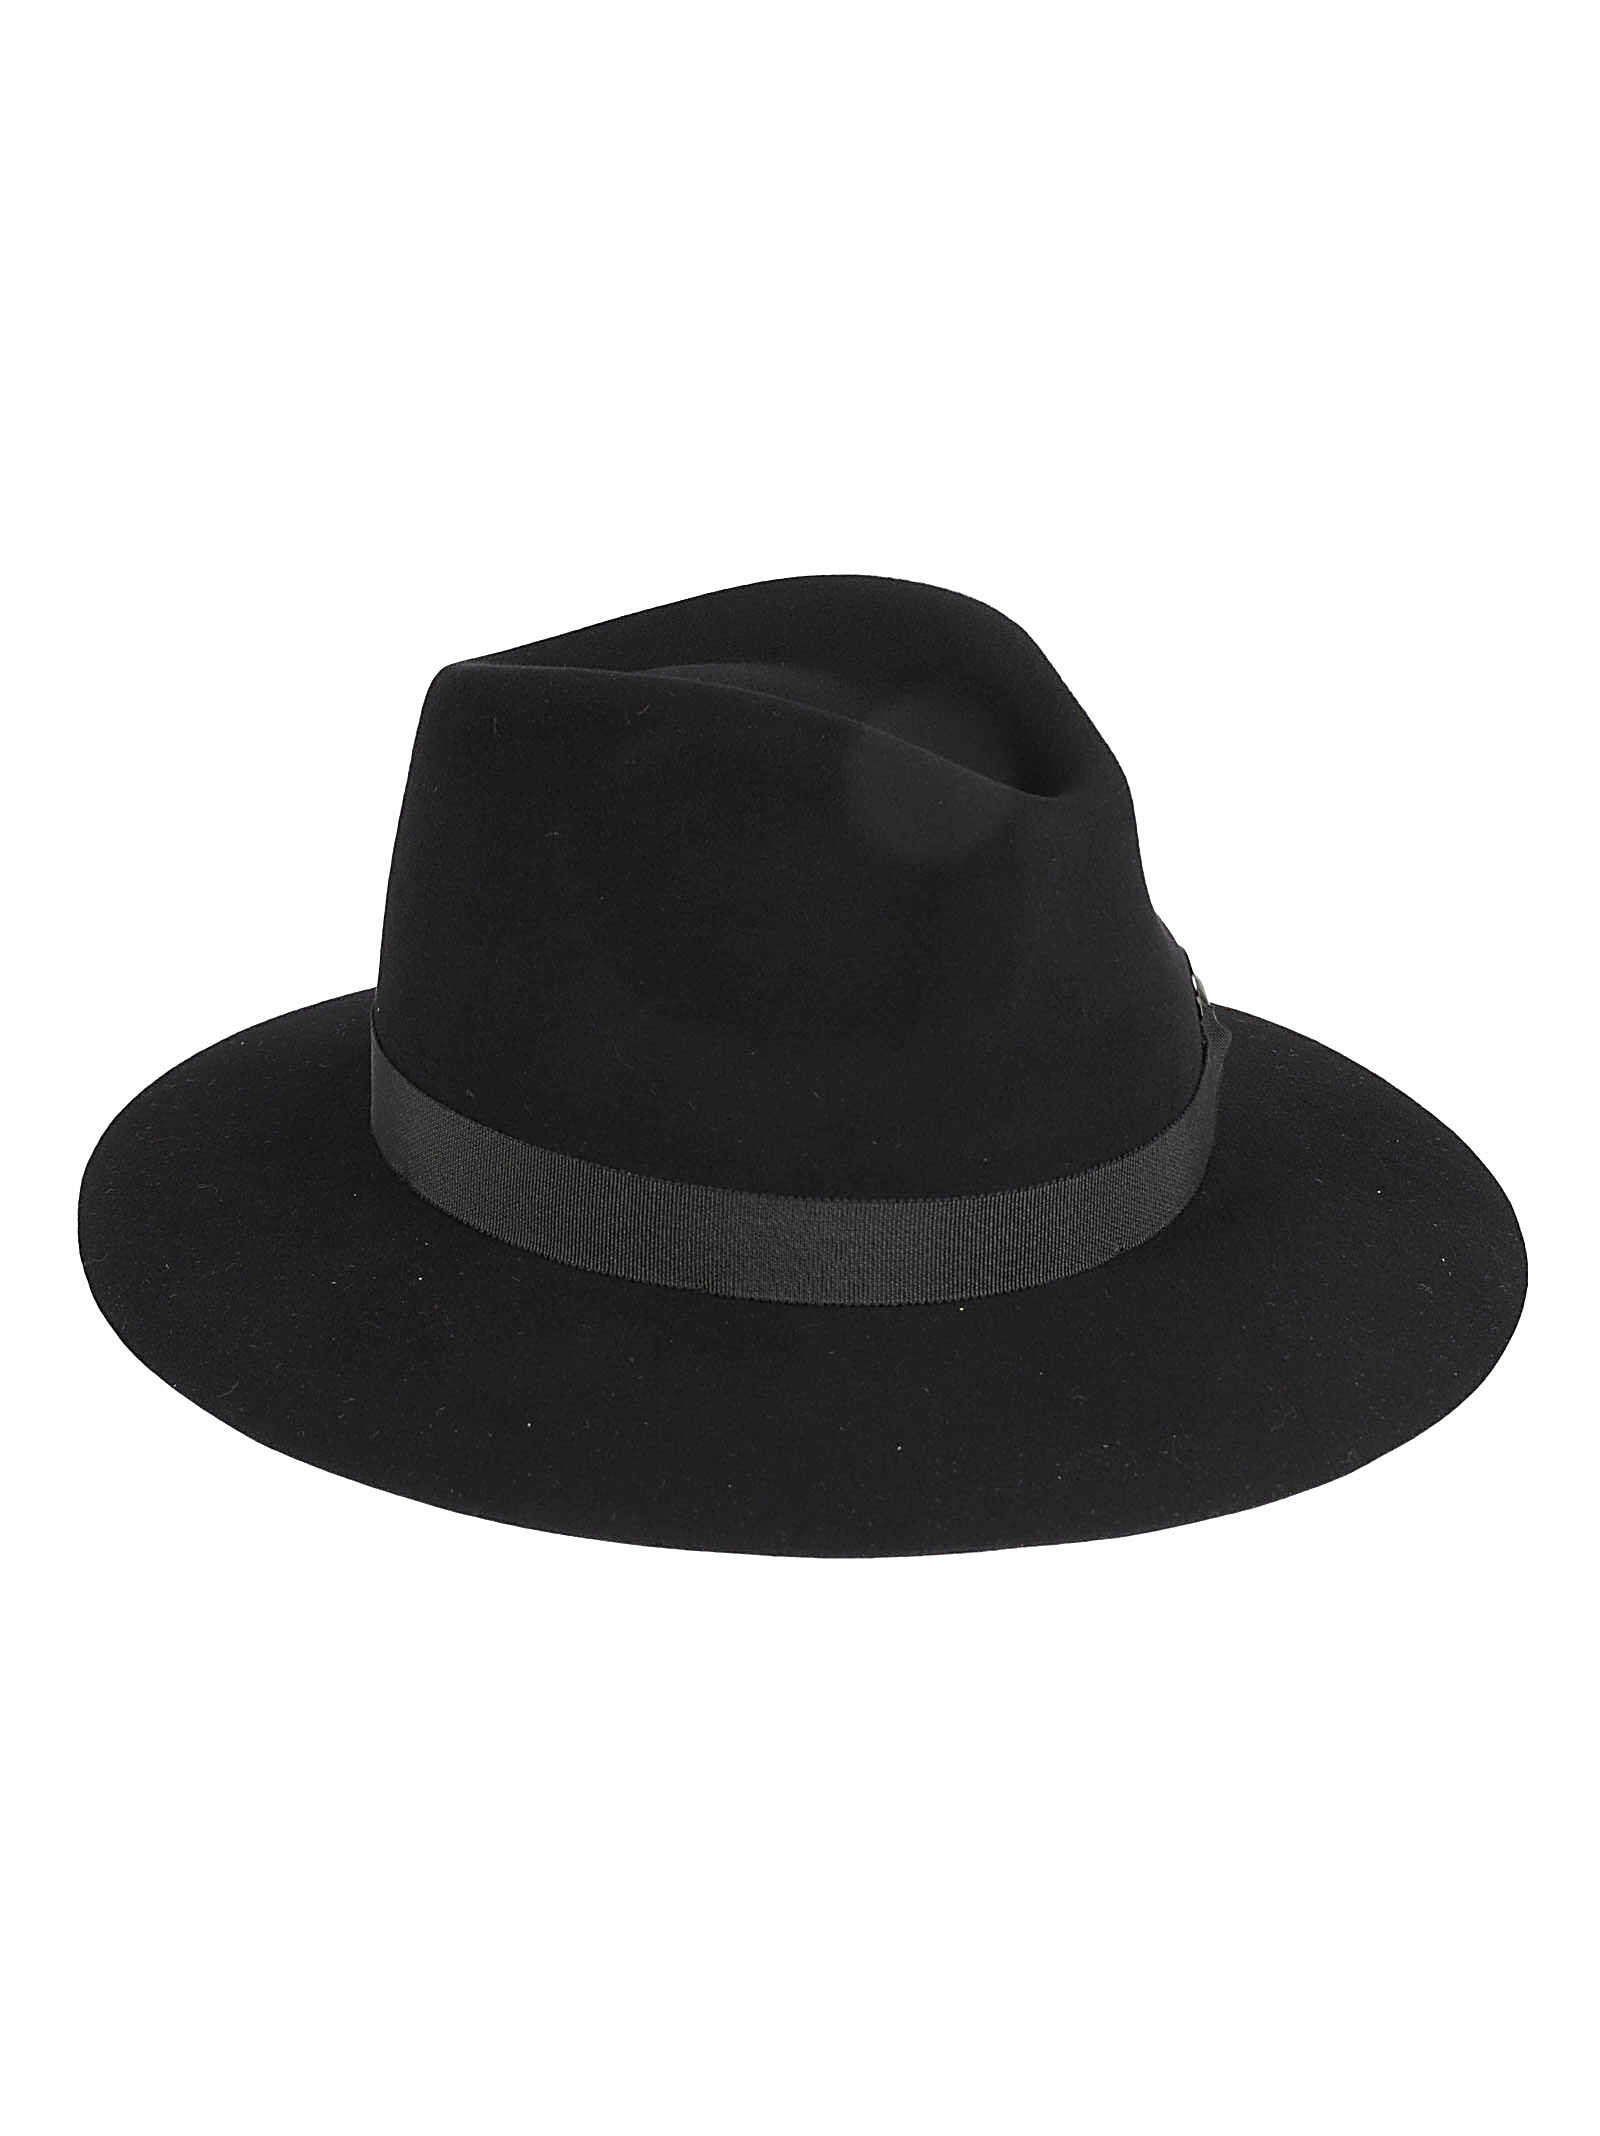 Maison Michel Hats Black Black